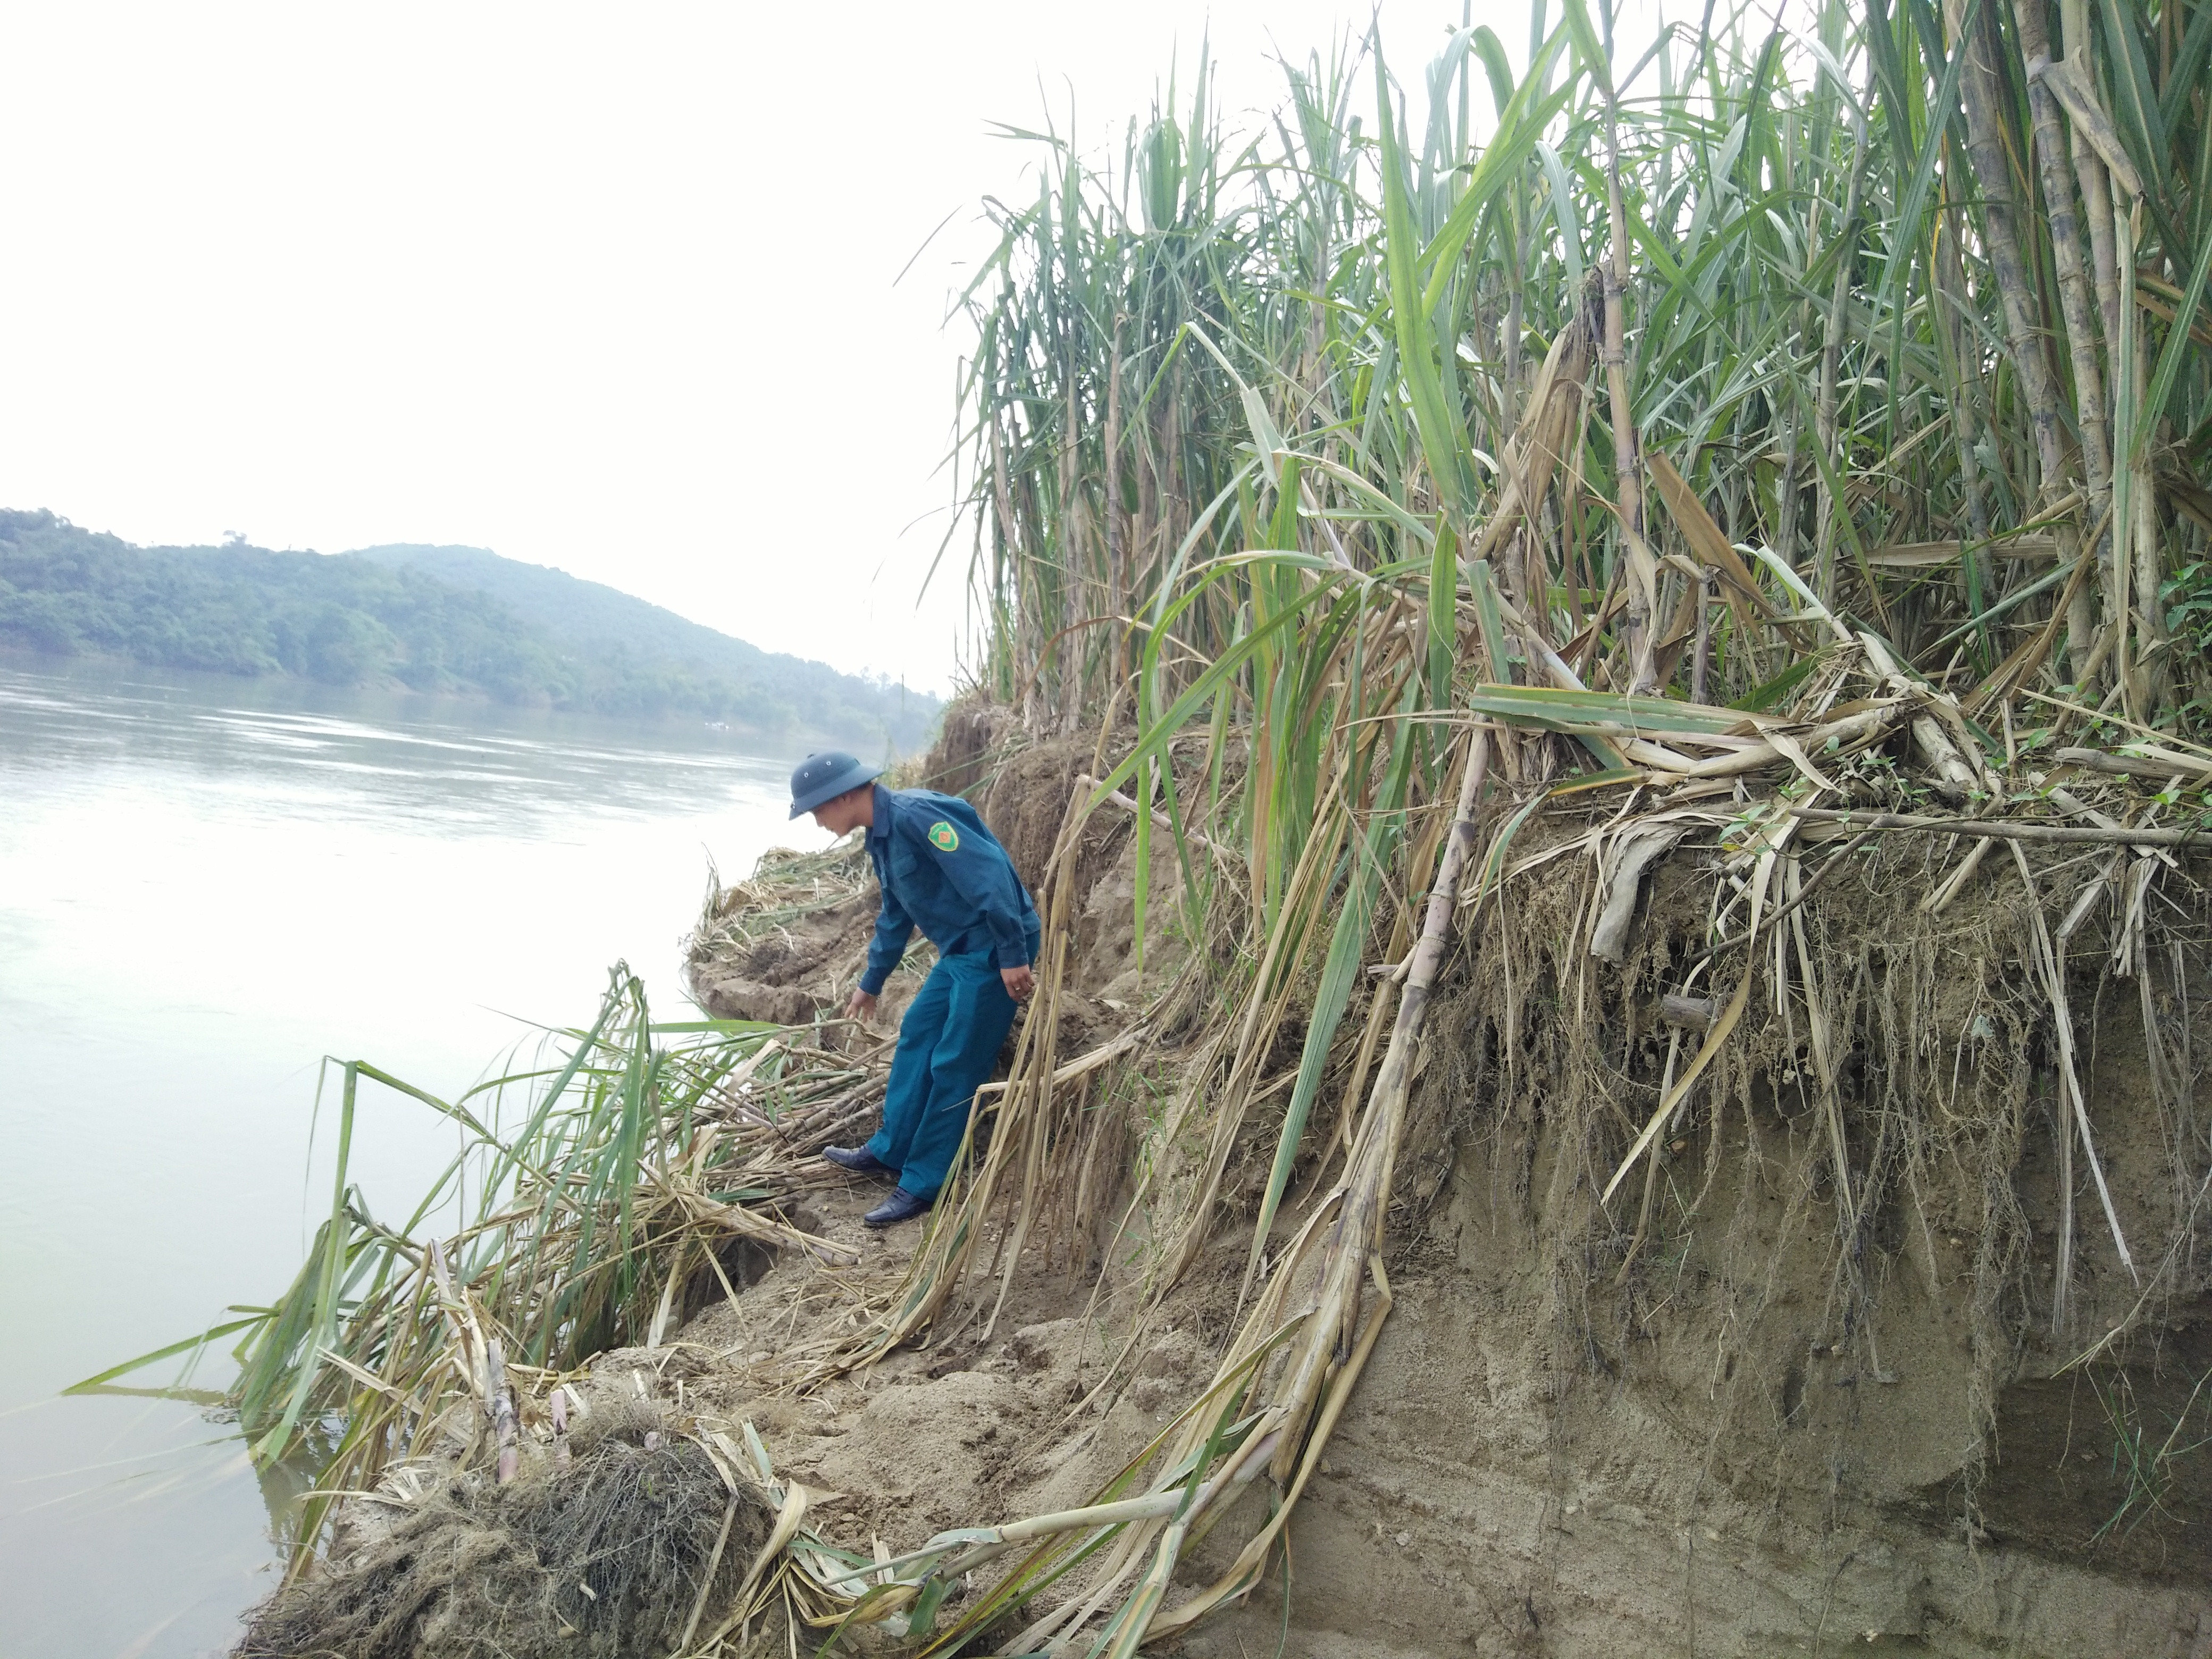 Việc xả lũ đã gây sạt lở bờ sông, đất sản xuất nông nghiệp trên bãi ven sông Lam. Ảnh: Thái Hiền